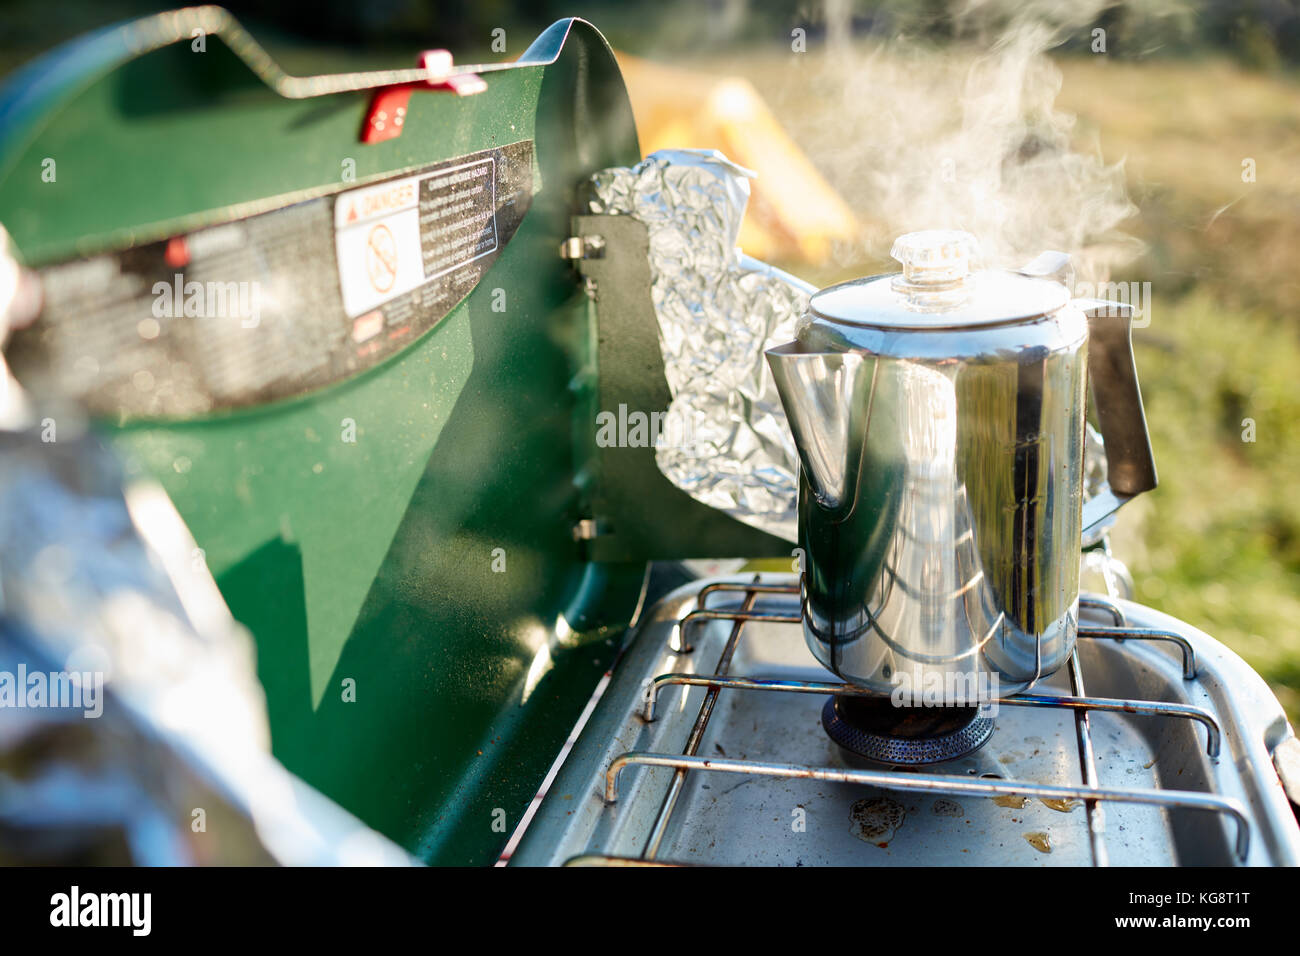 Heizung Wasser für Kaffee auf einem Gasbrenner in einem dampfenden